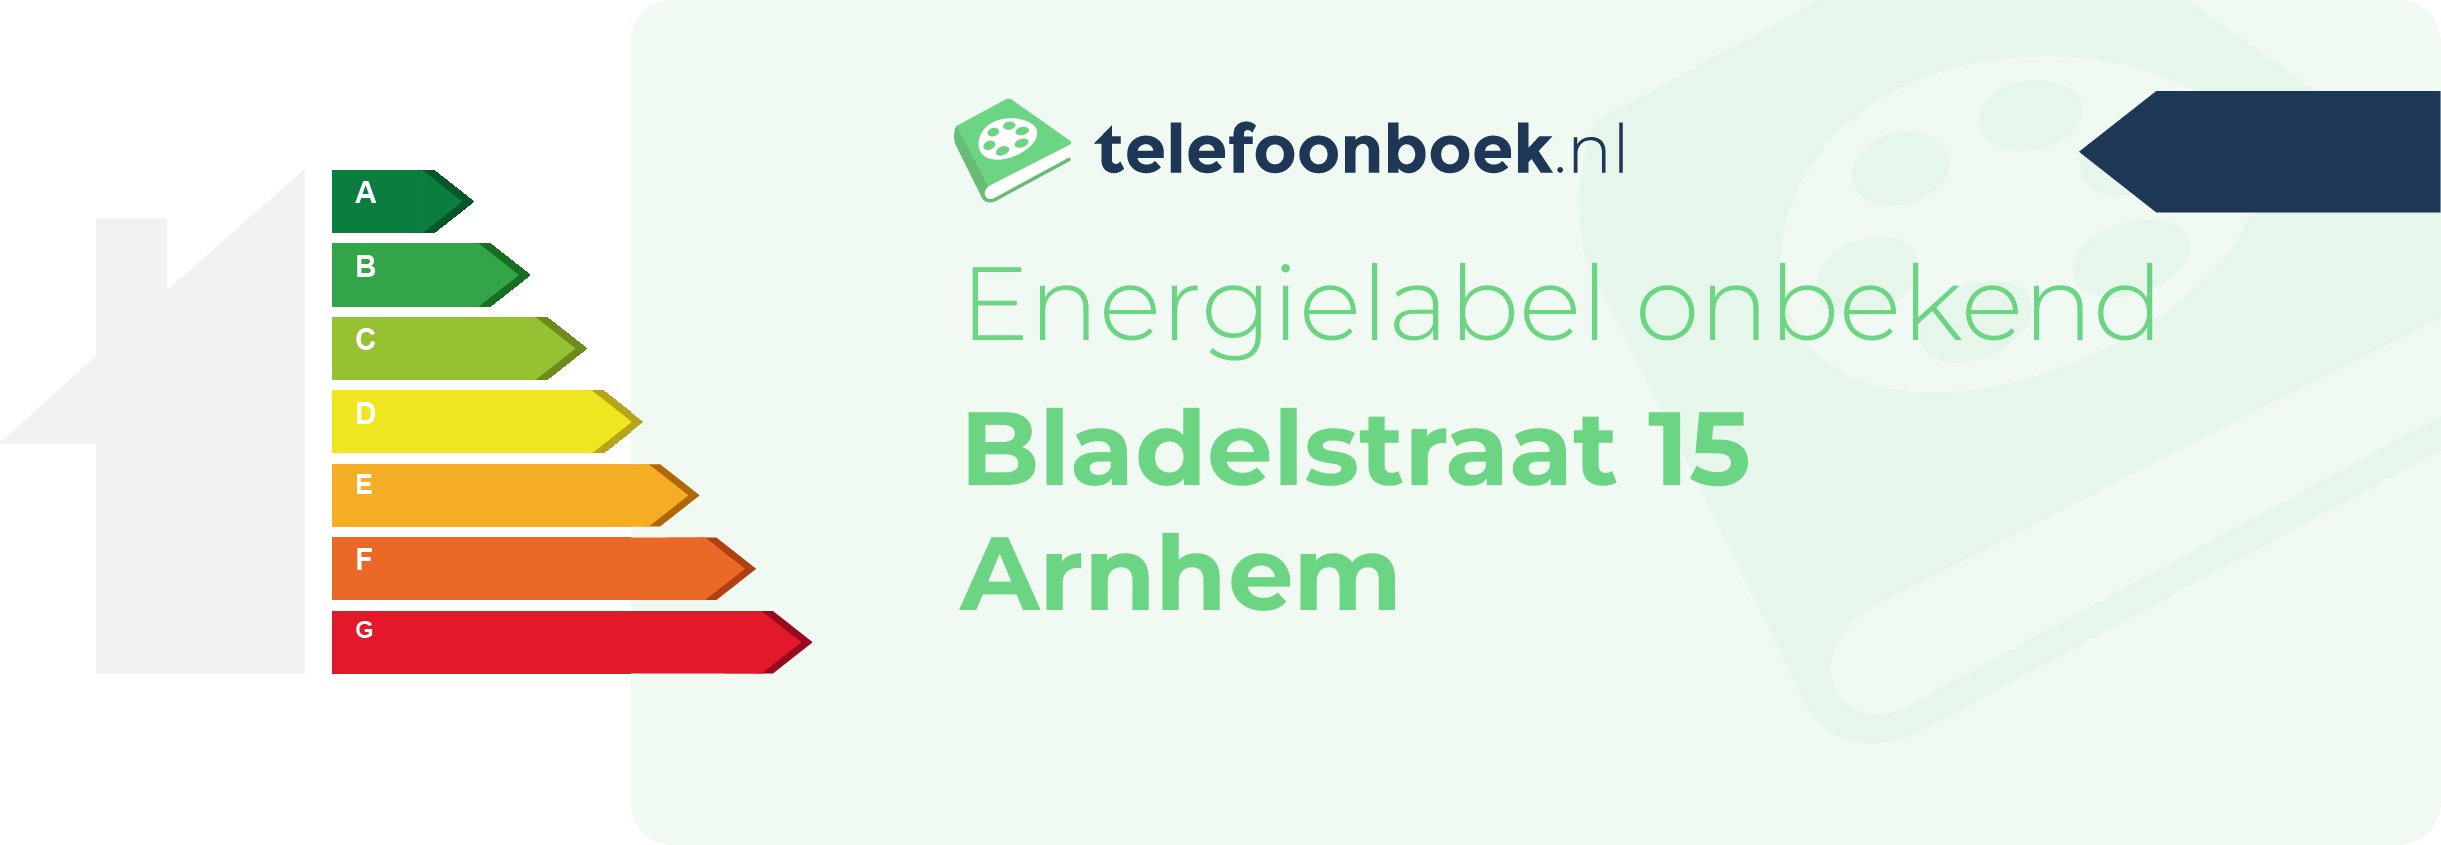 Energielabel Bladelstraat 15 Arnhem